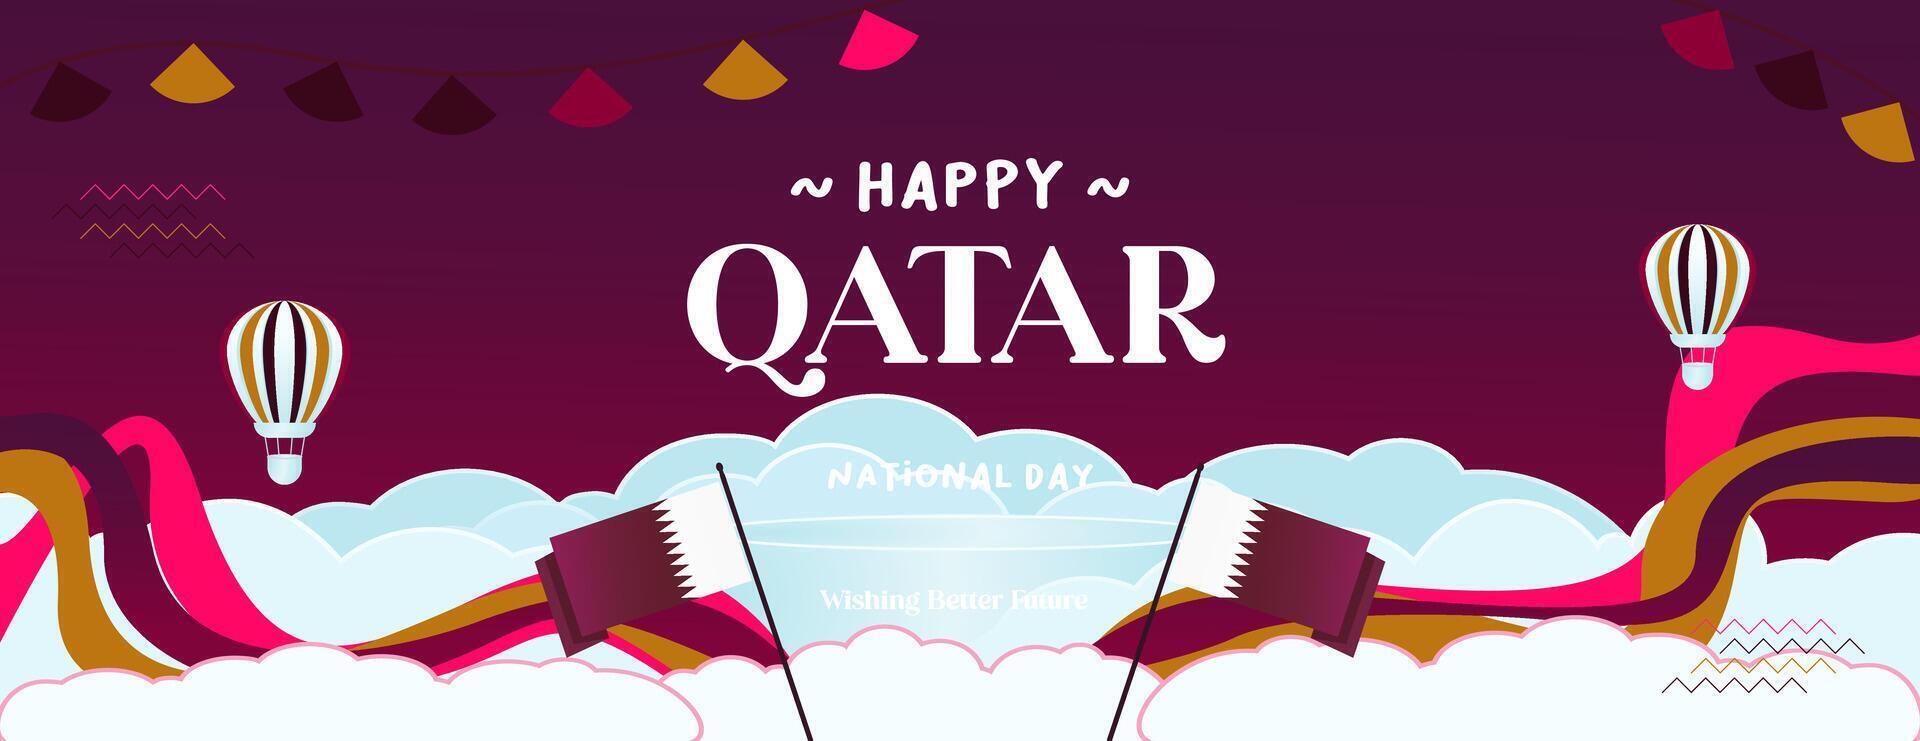 Qatar nazionale giorno bandiera nel colorato moderno geometrico stile. Qatar nazionale indipendenza giorno saluto carta copertina con tipografia. vettore illustrazione per nazionale vacanza celebrazione festa